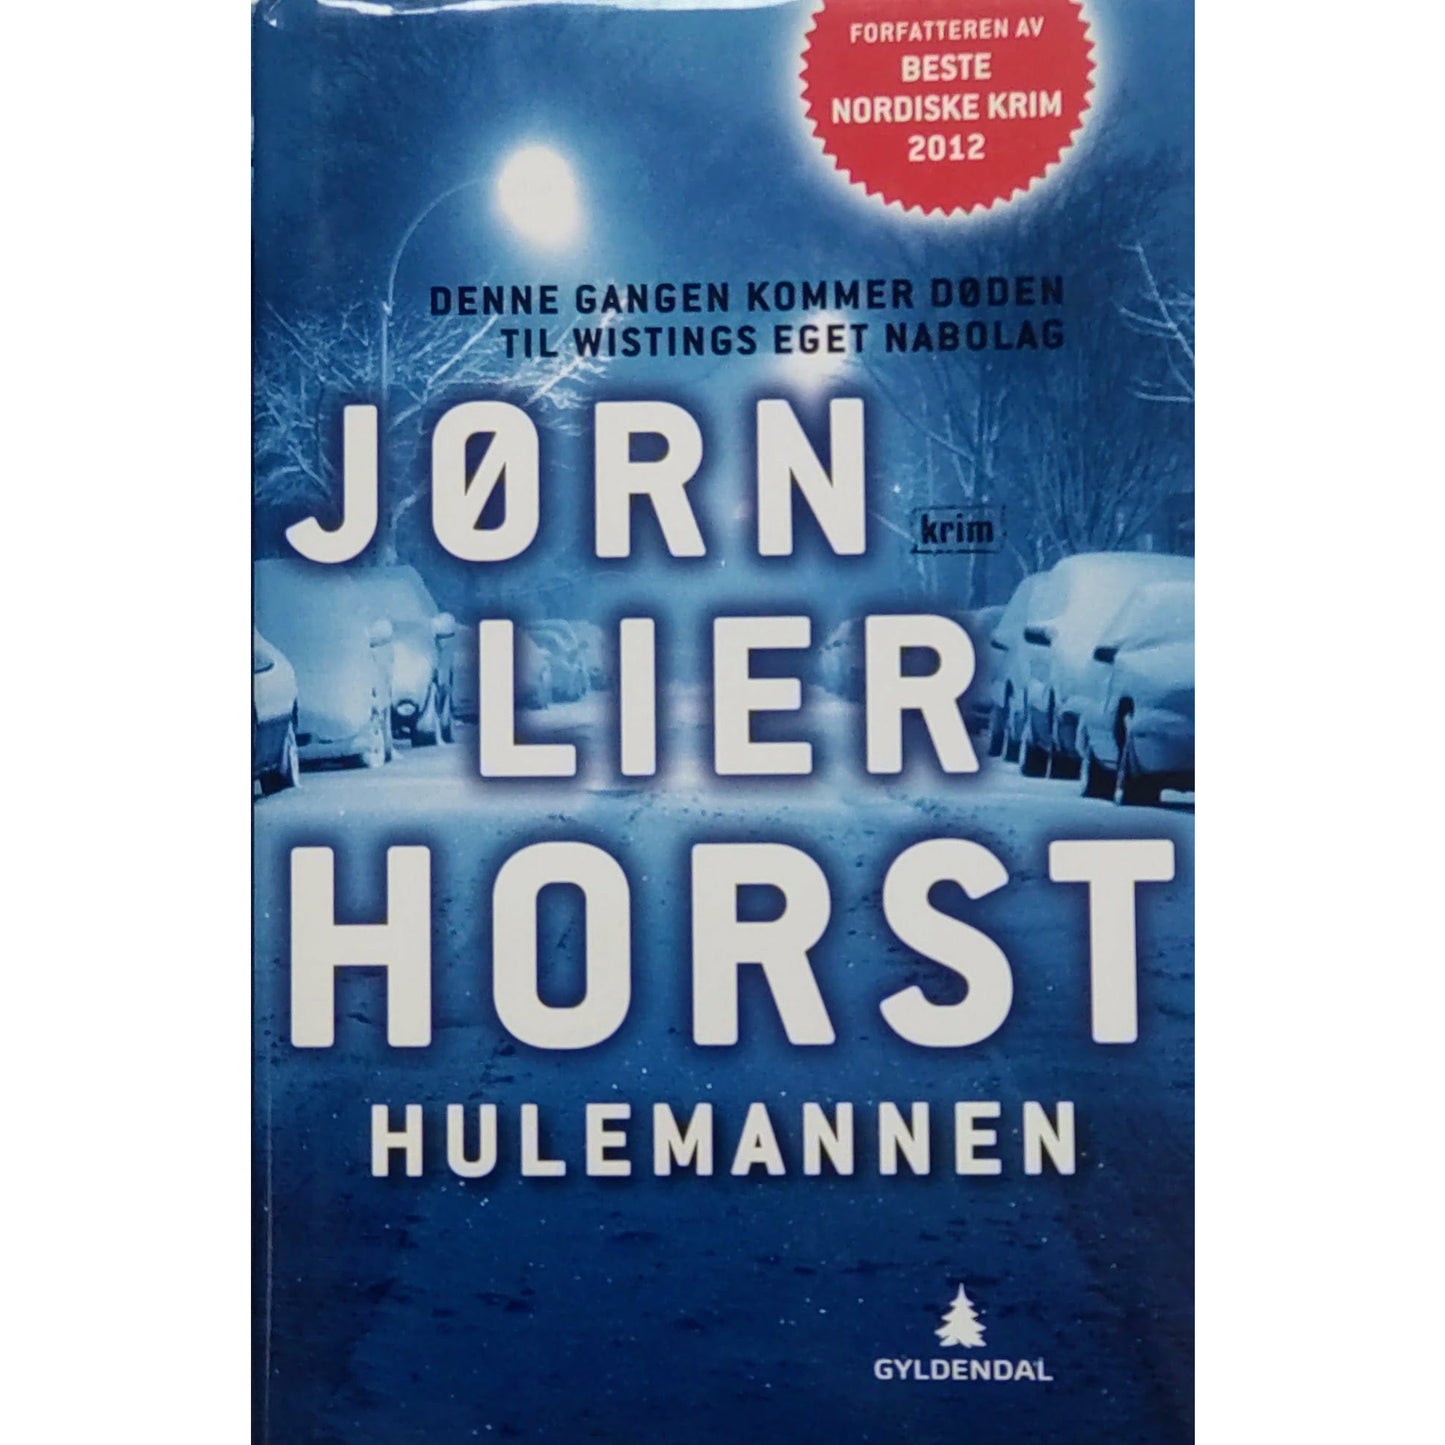 Horst, Jørn Lier: Hulemannen - William Wisting 9